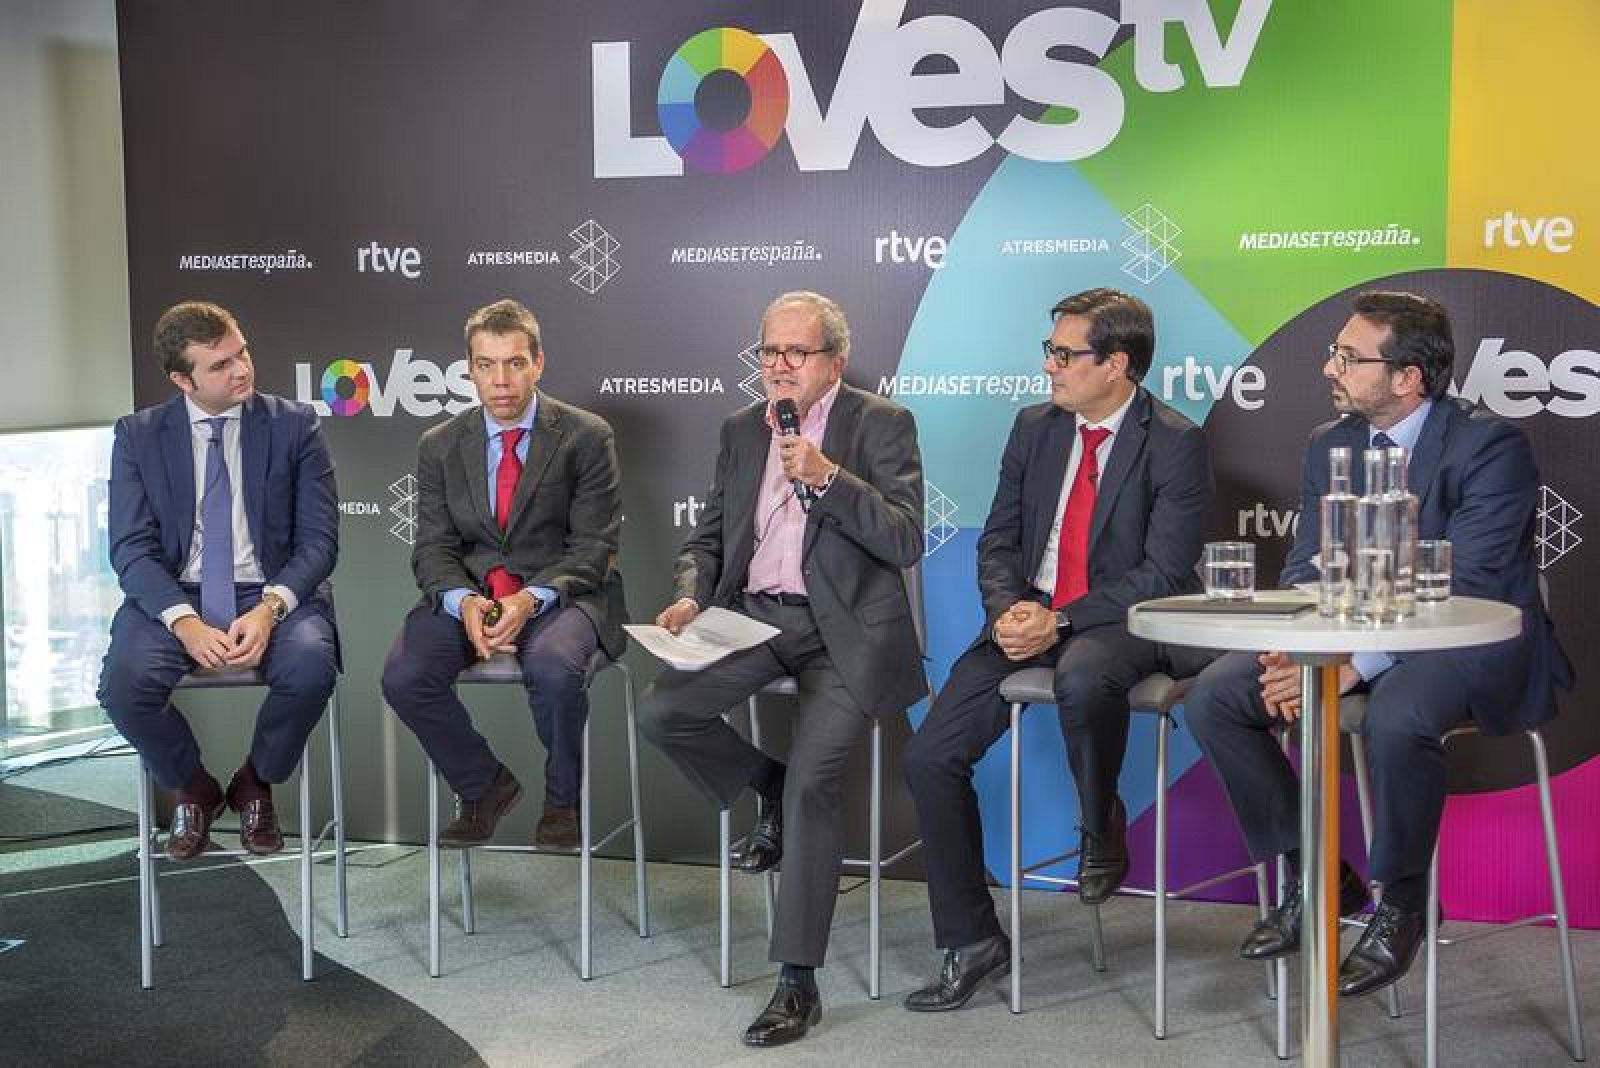  Presentación conjunta de Lovestv con RTVE, Mediaset y Atresmedia